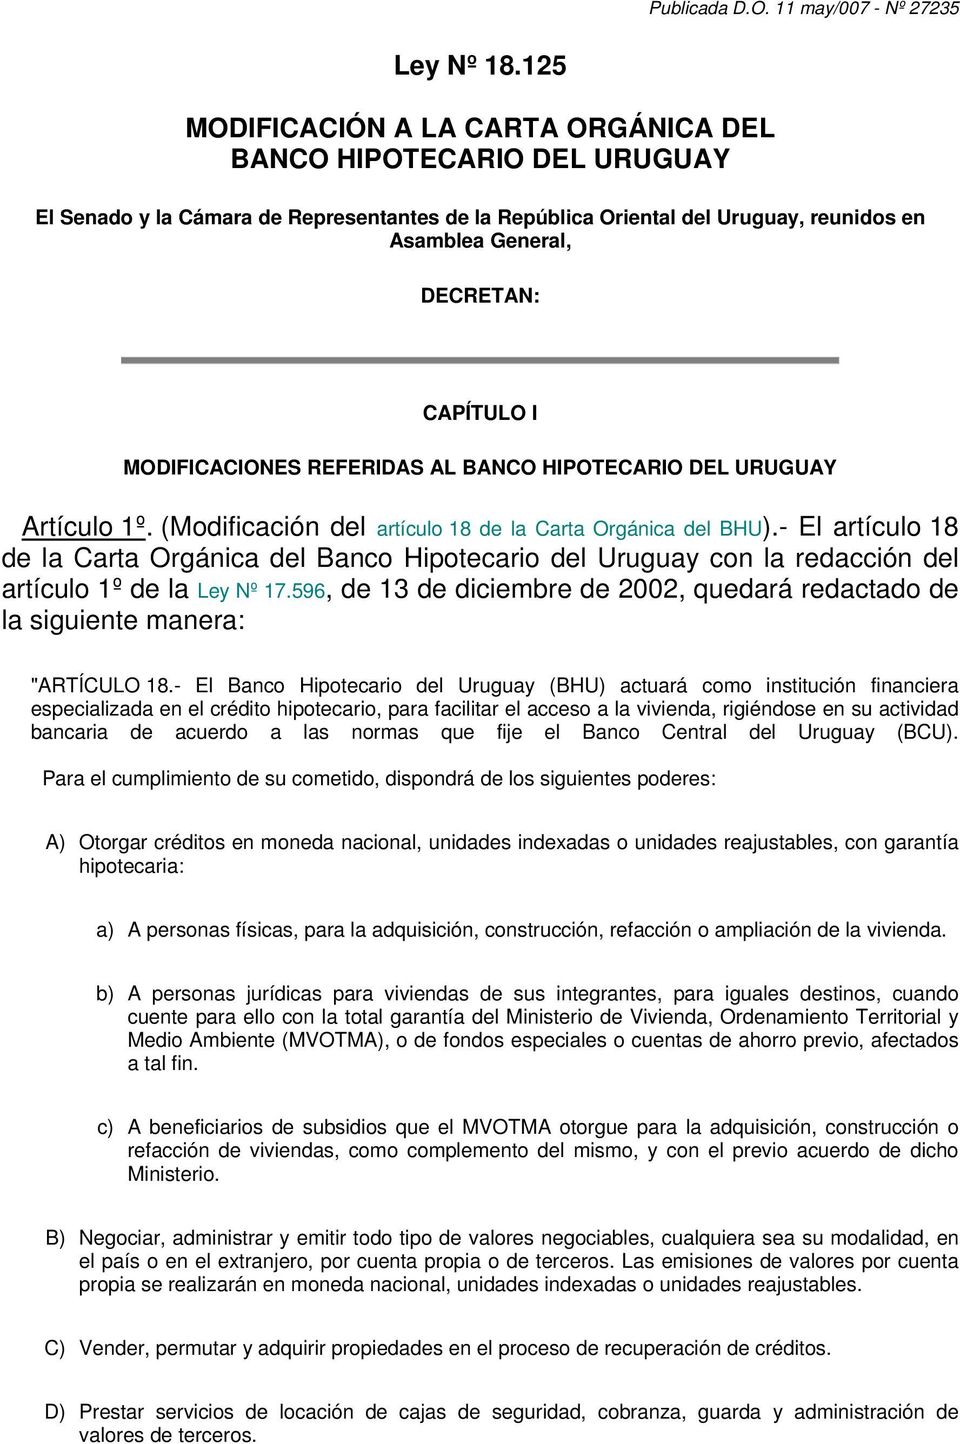 MODIFICACIONES REFERIDAS AL BANCO HIPOTECARIO DEL URUGUAY Artículo 1º. (Modificación del artículo 18 de la Carta Orgánica del BHU).